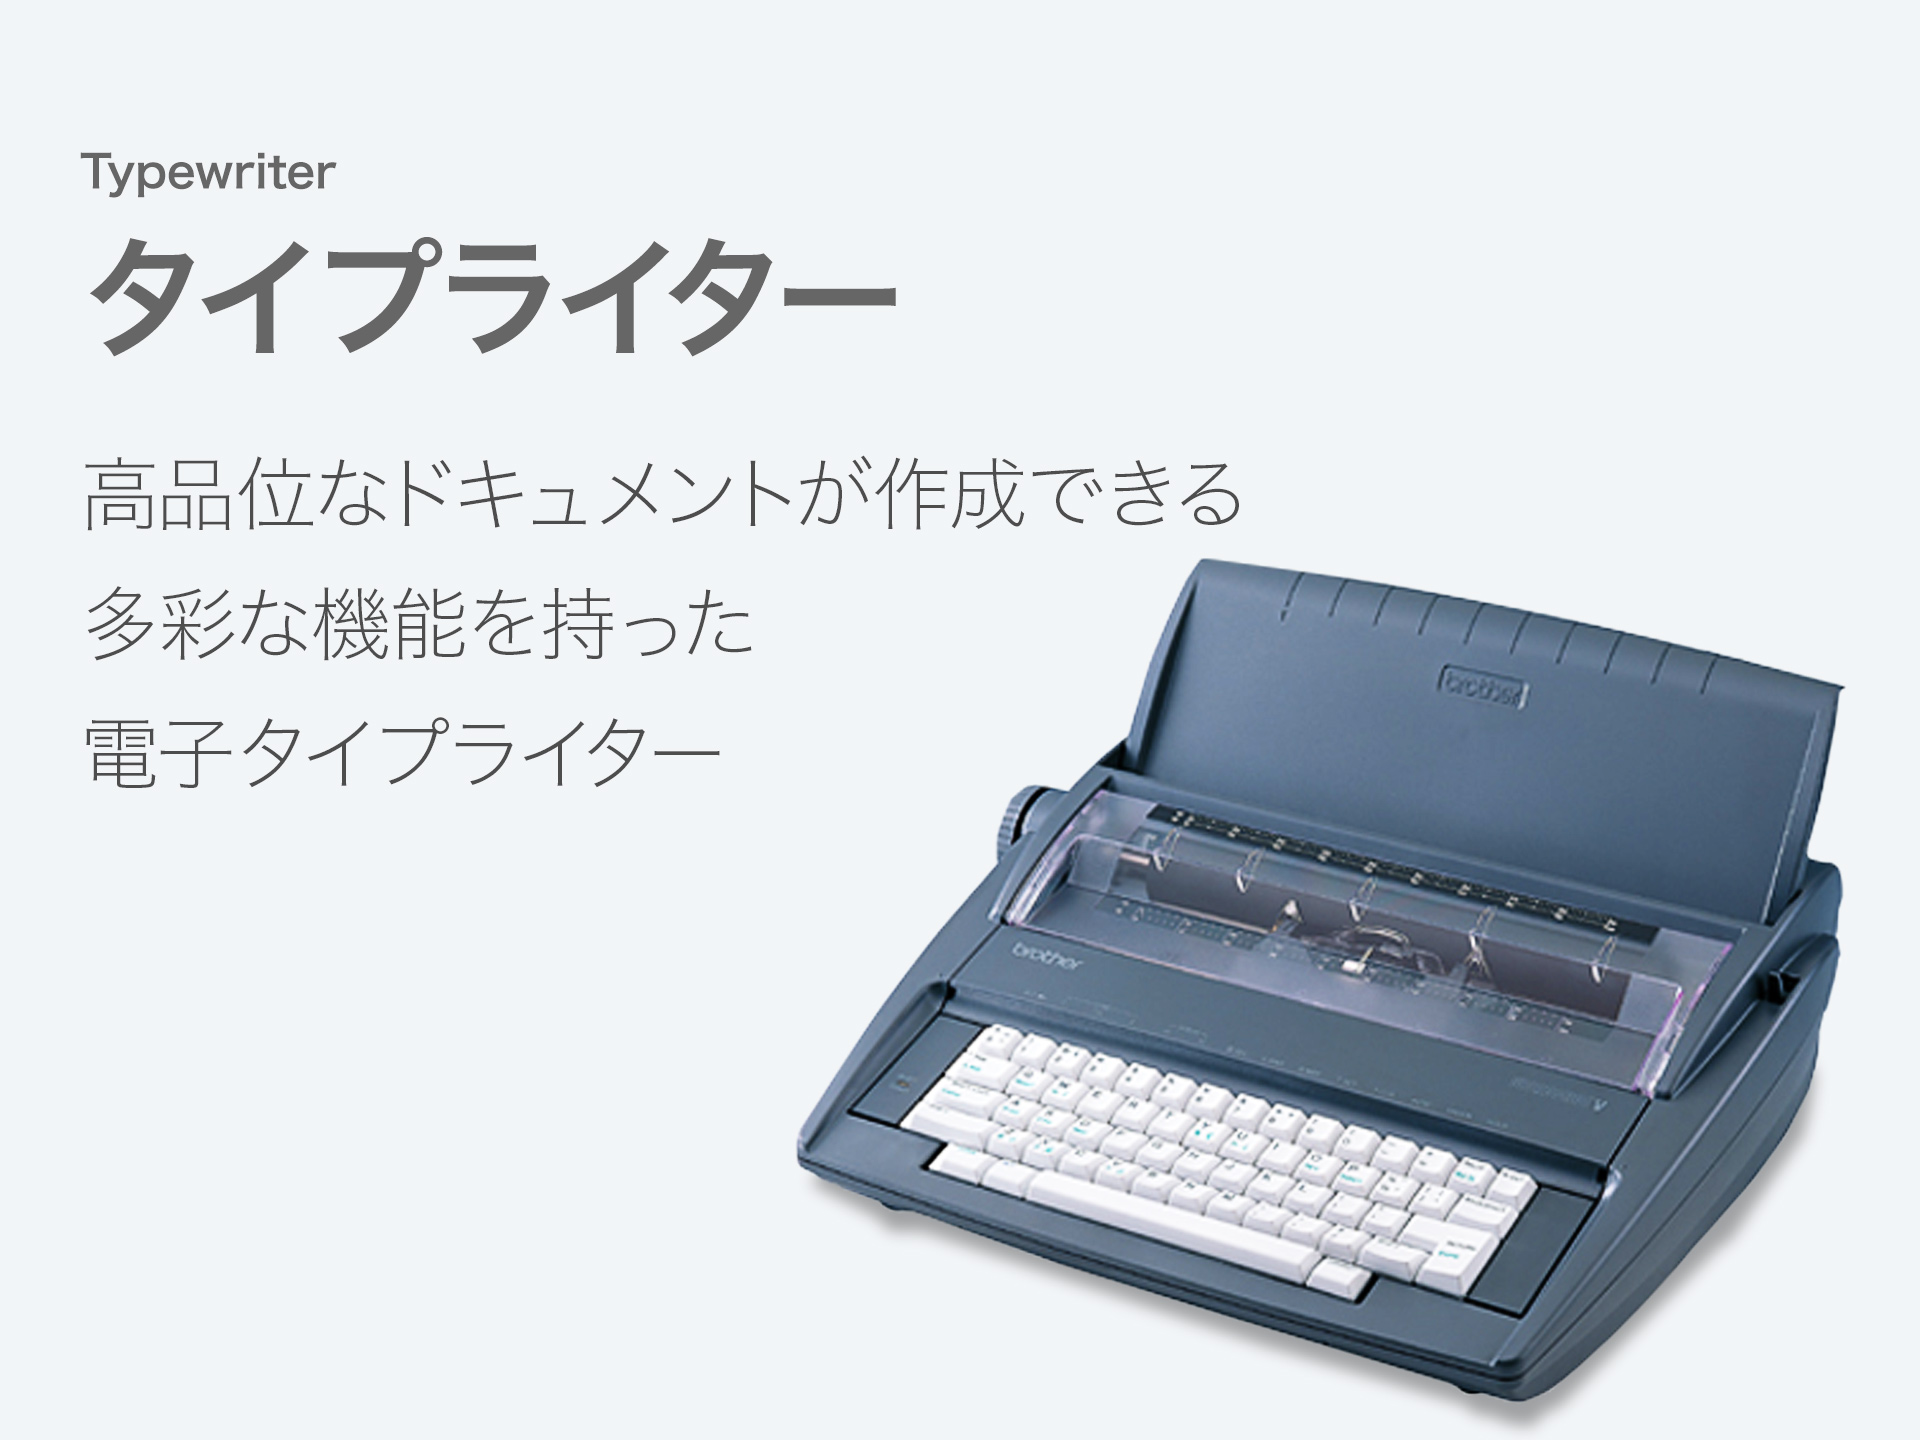 タイプライター 高品質なドキュメントが作成できる 多彩な機能を持った電子タイプライター